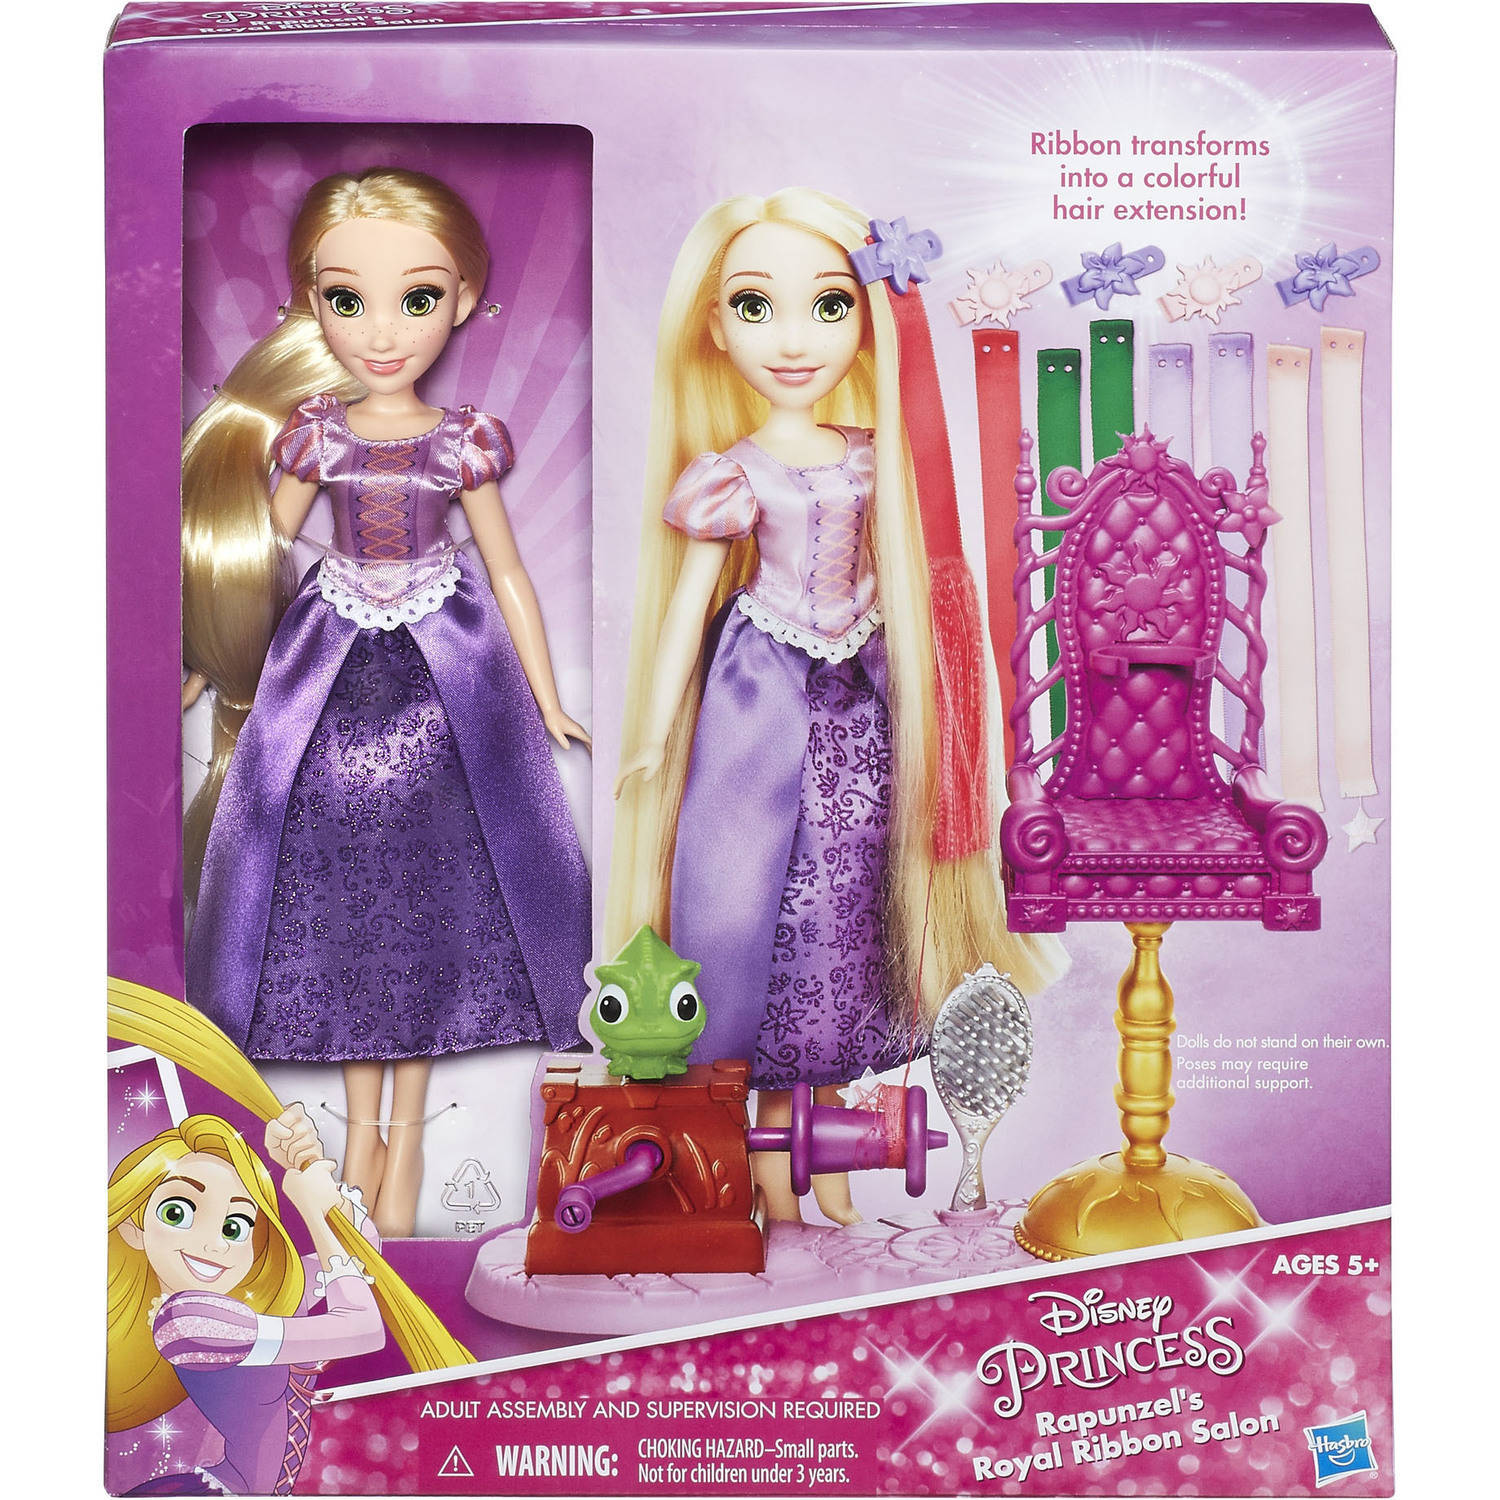 Disney Princess Rapunzel's Royal Ribbon Salon - image 2 of 10